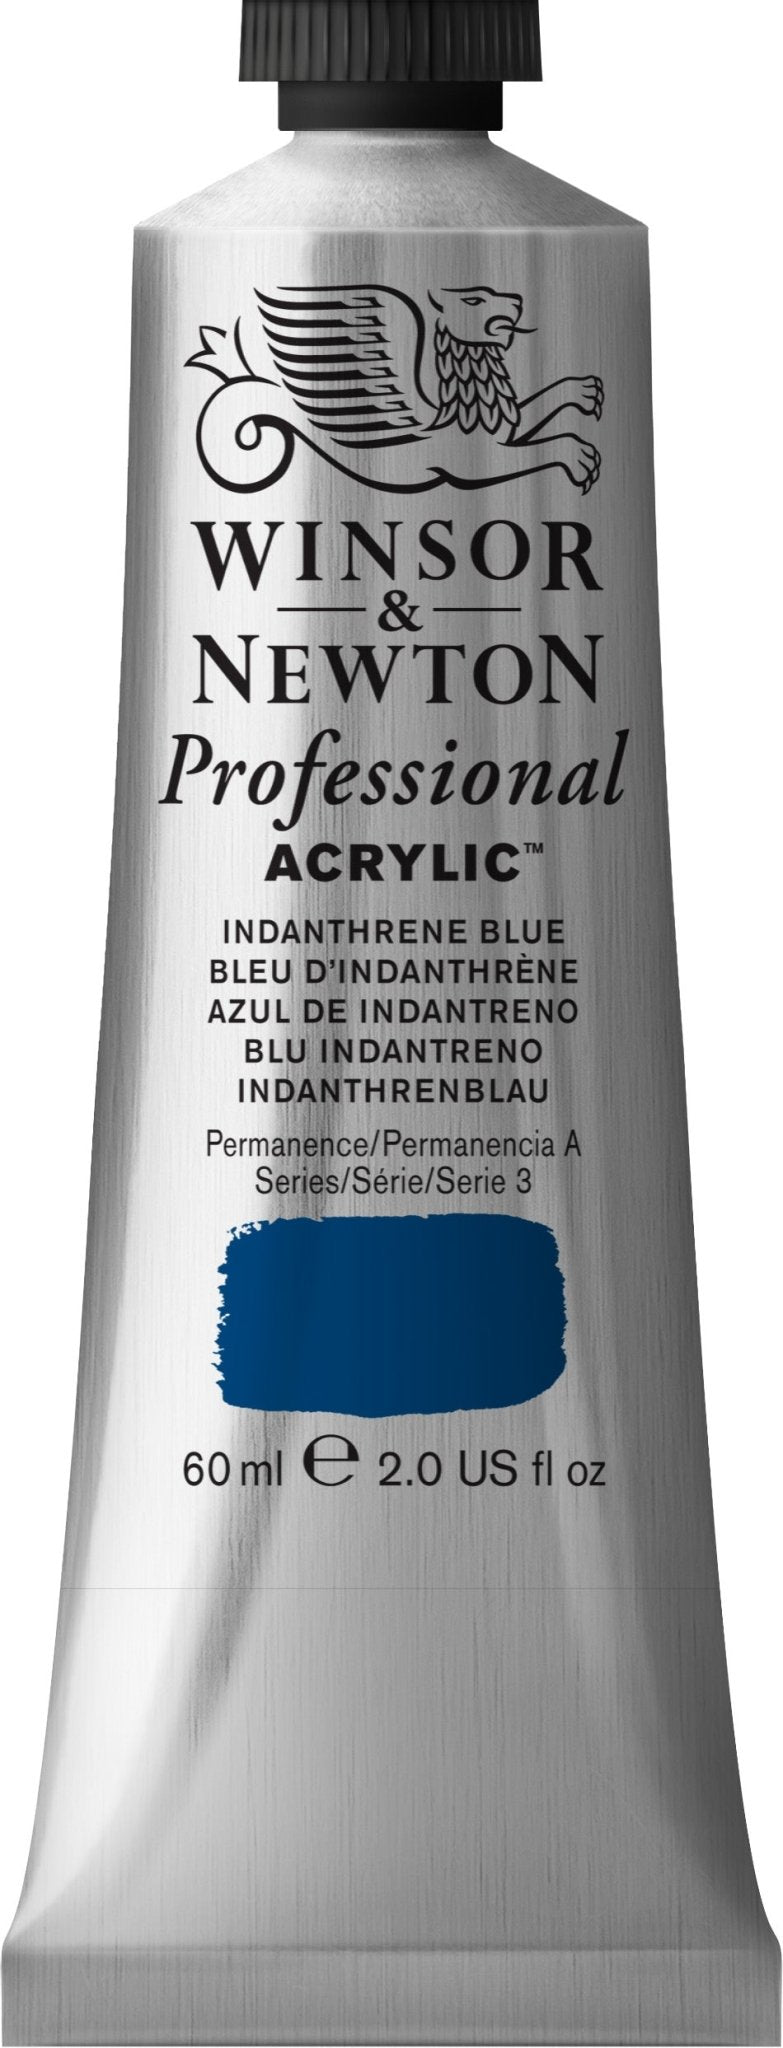 W & N Professional Acrylic 60ml Indanthrene Blue - theartshop.com.au